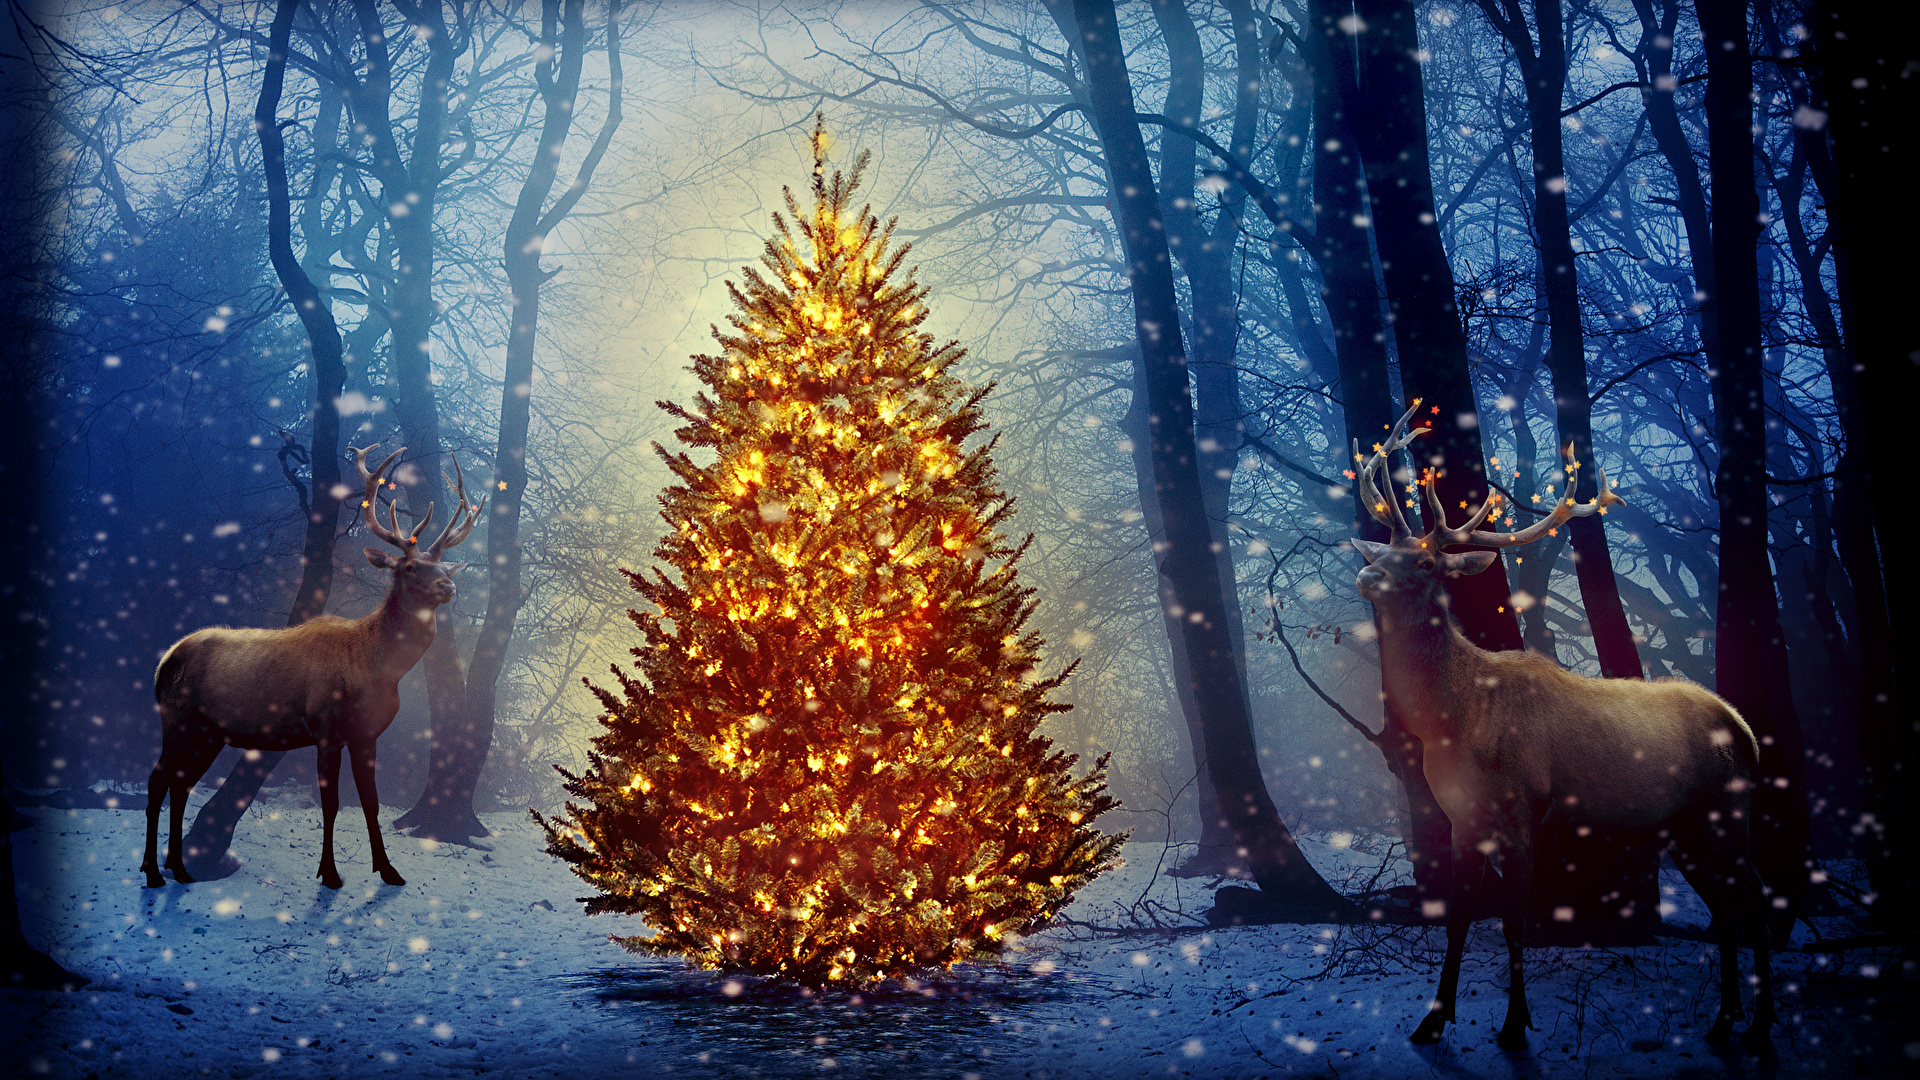 壁紙 19x1080 新年 シカ 森林 冬 クリスマスライト クリスマスツリー 雪の結晶 動物 自然 ダウンロード 写真